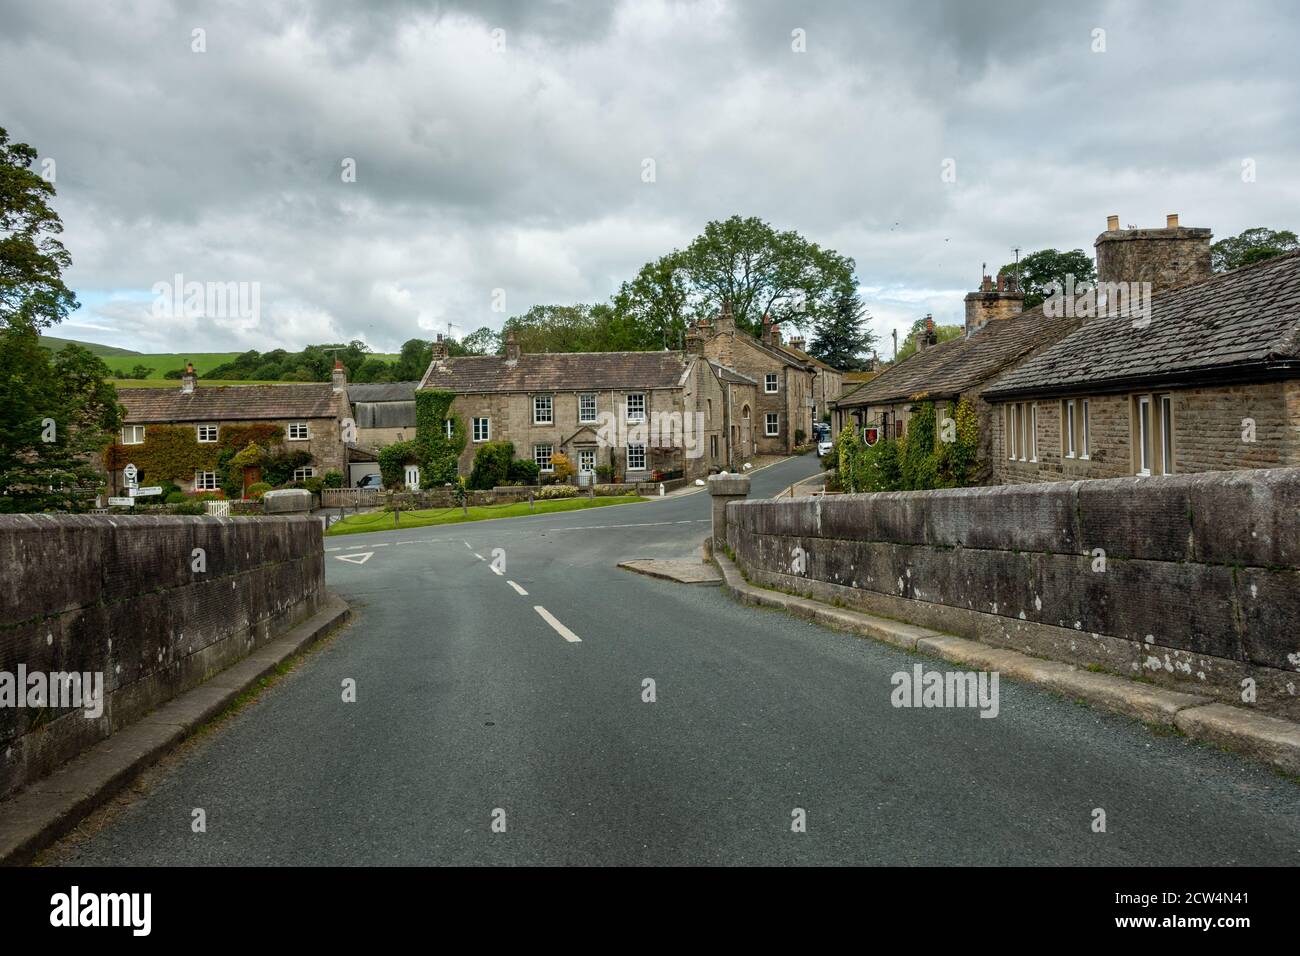 Burnsall Dorfzentrum - Blick auf die Straße von malerischen Häusern von der Brücke, Yorkshire Dales, Großbritannien Stockfoto